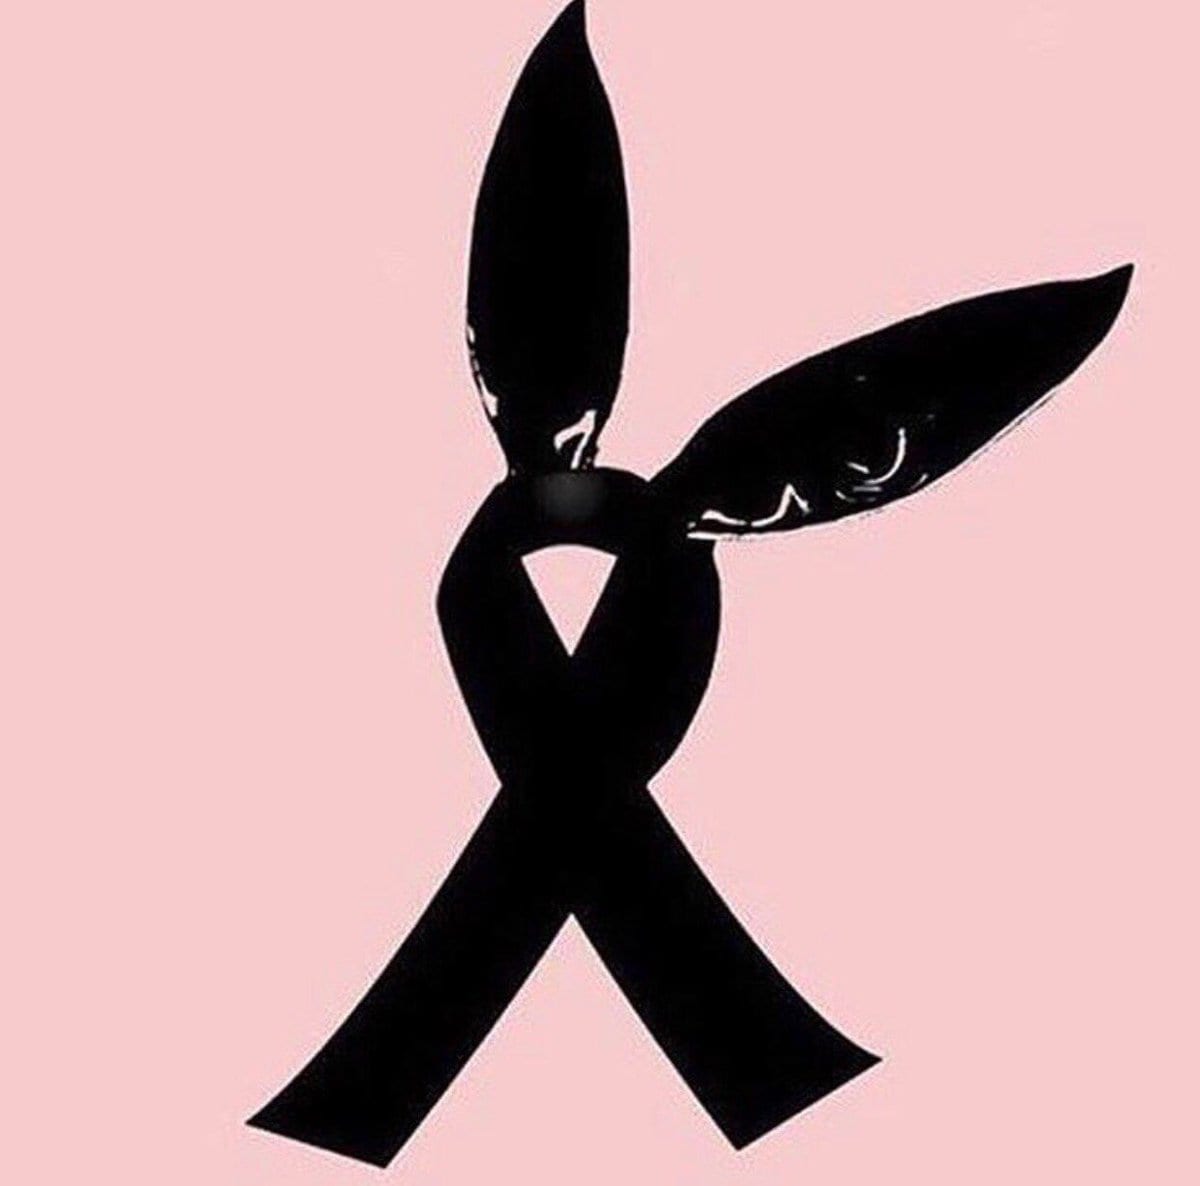 En memoria de las víctimas del atentado en el concierto de Ariana Grande en Manchester